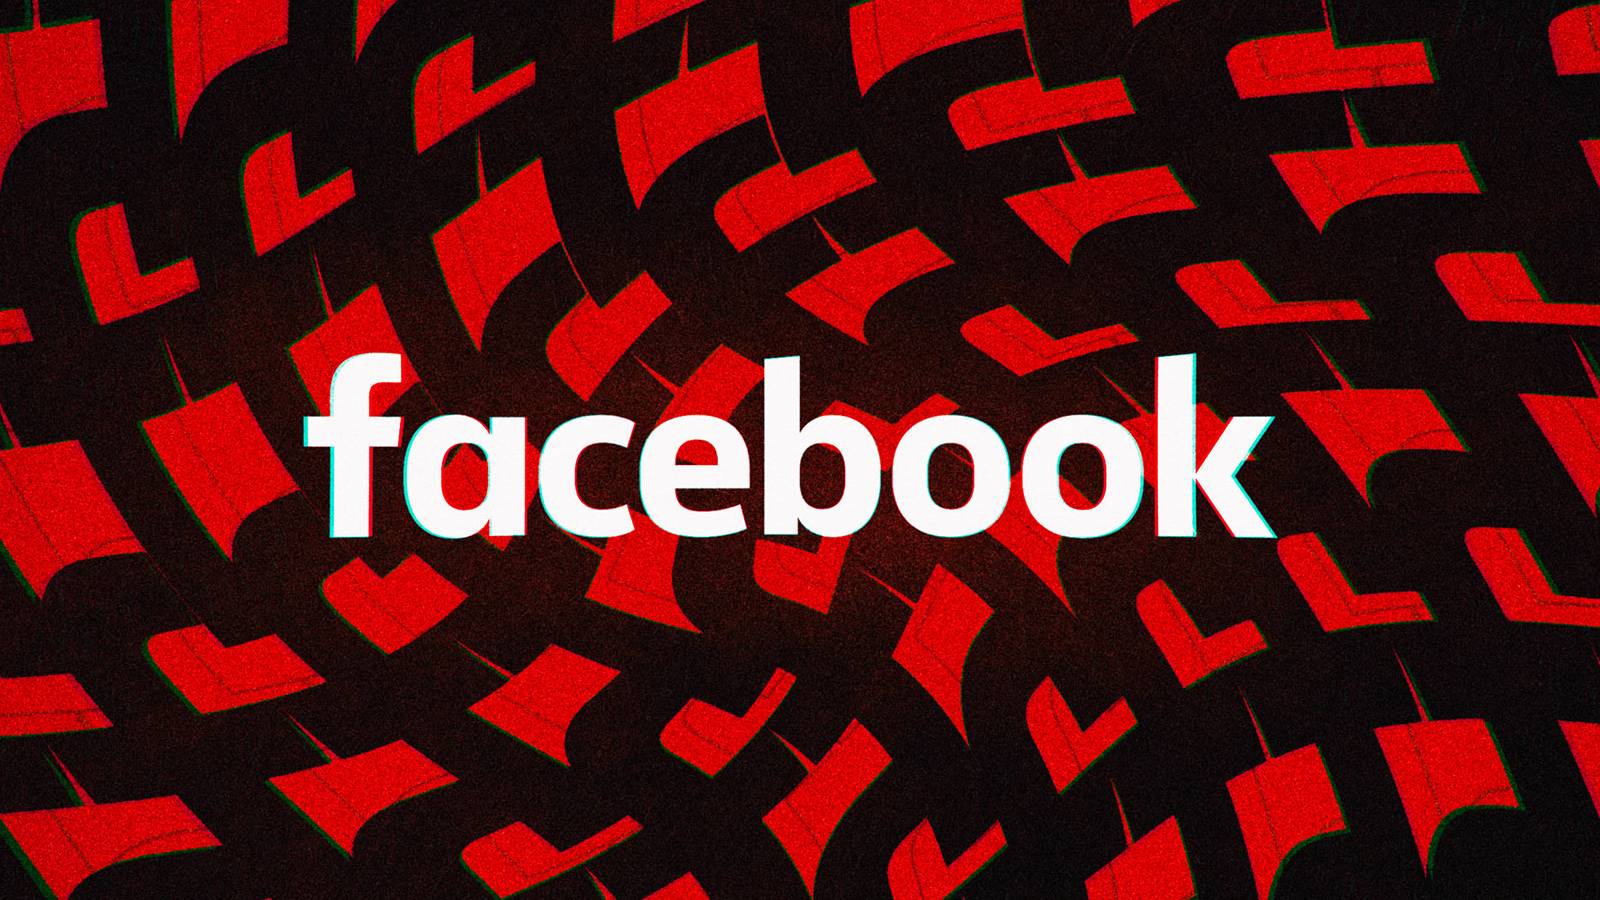 Facebook: Noua Actualizare Lansata, Schimbarile pentru Telefoane